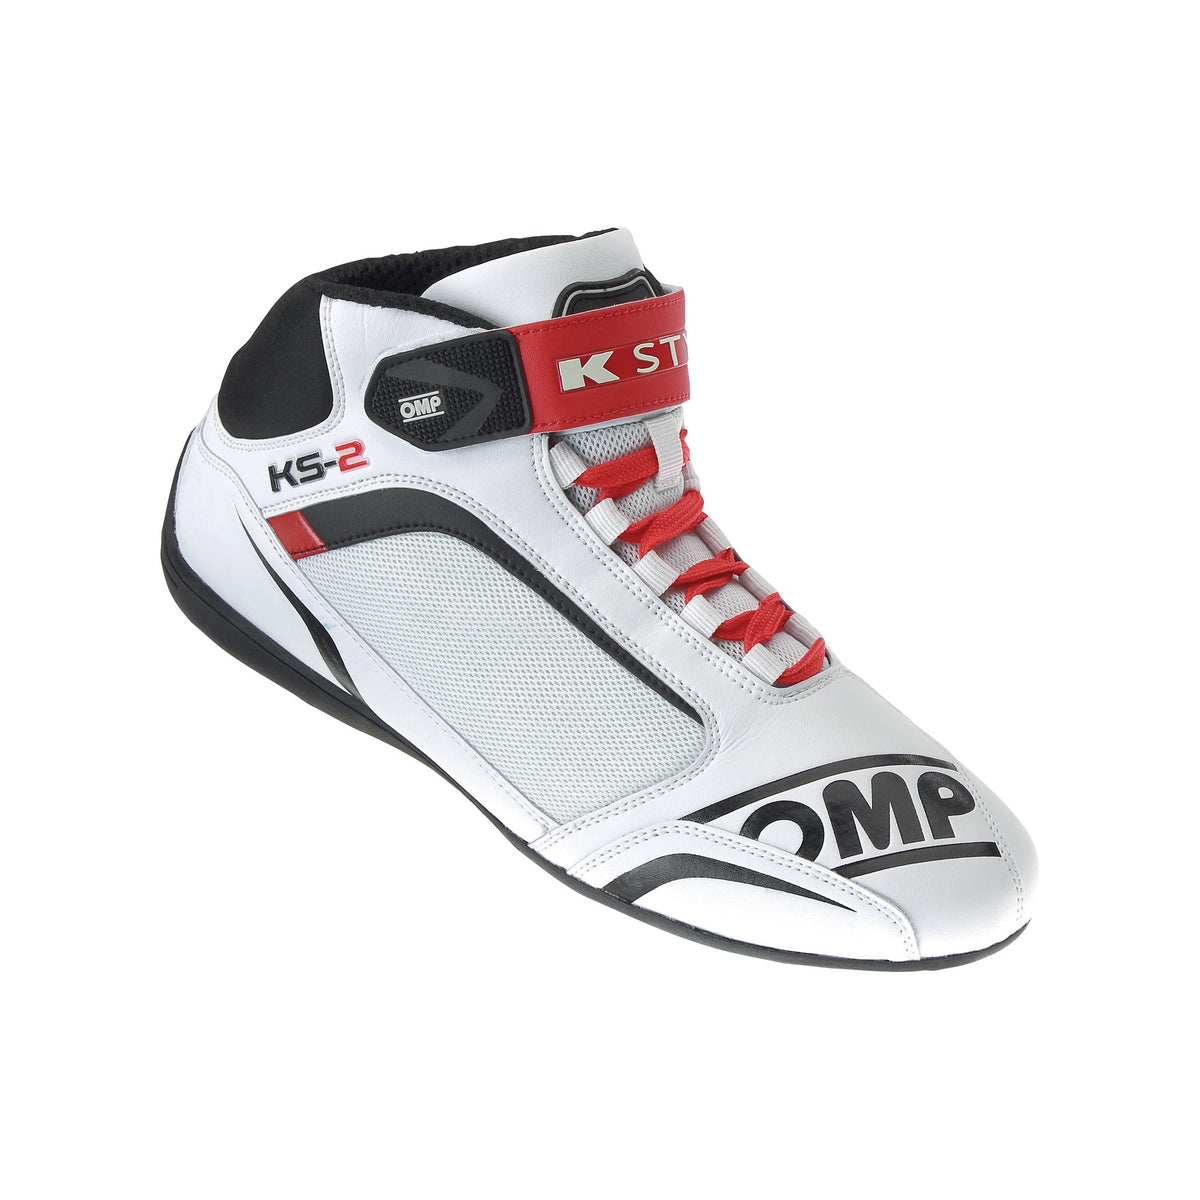 OMP KS-2 Kart Shoes - Fast Racer — FAST RACER